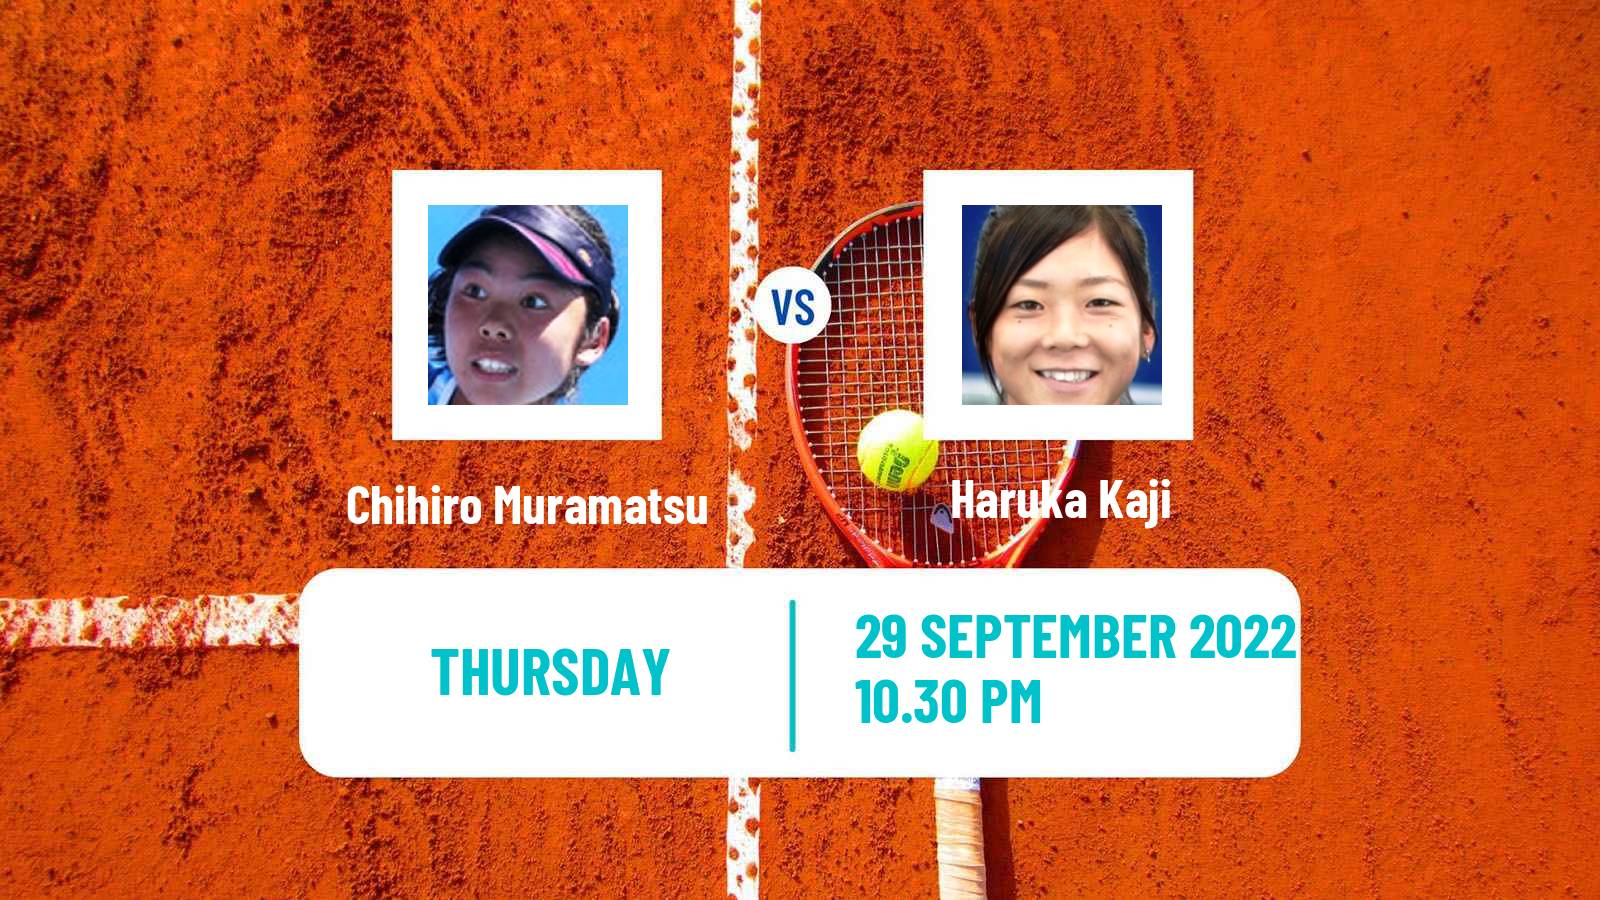 Tennis ITF Tournaments Chihiro Muramatsu - Haruka Kaji